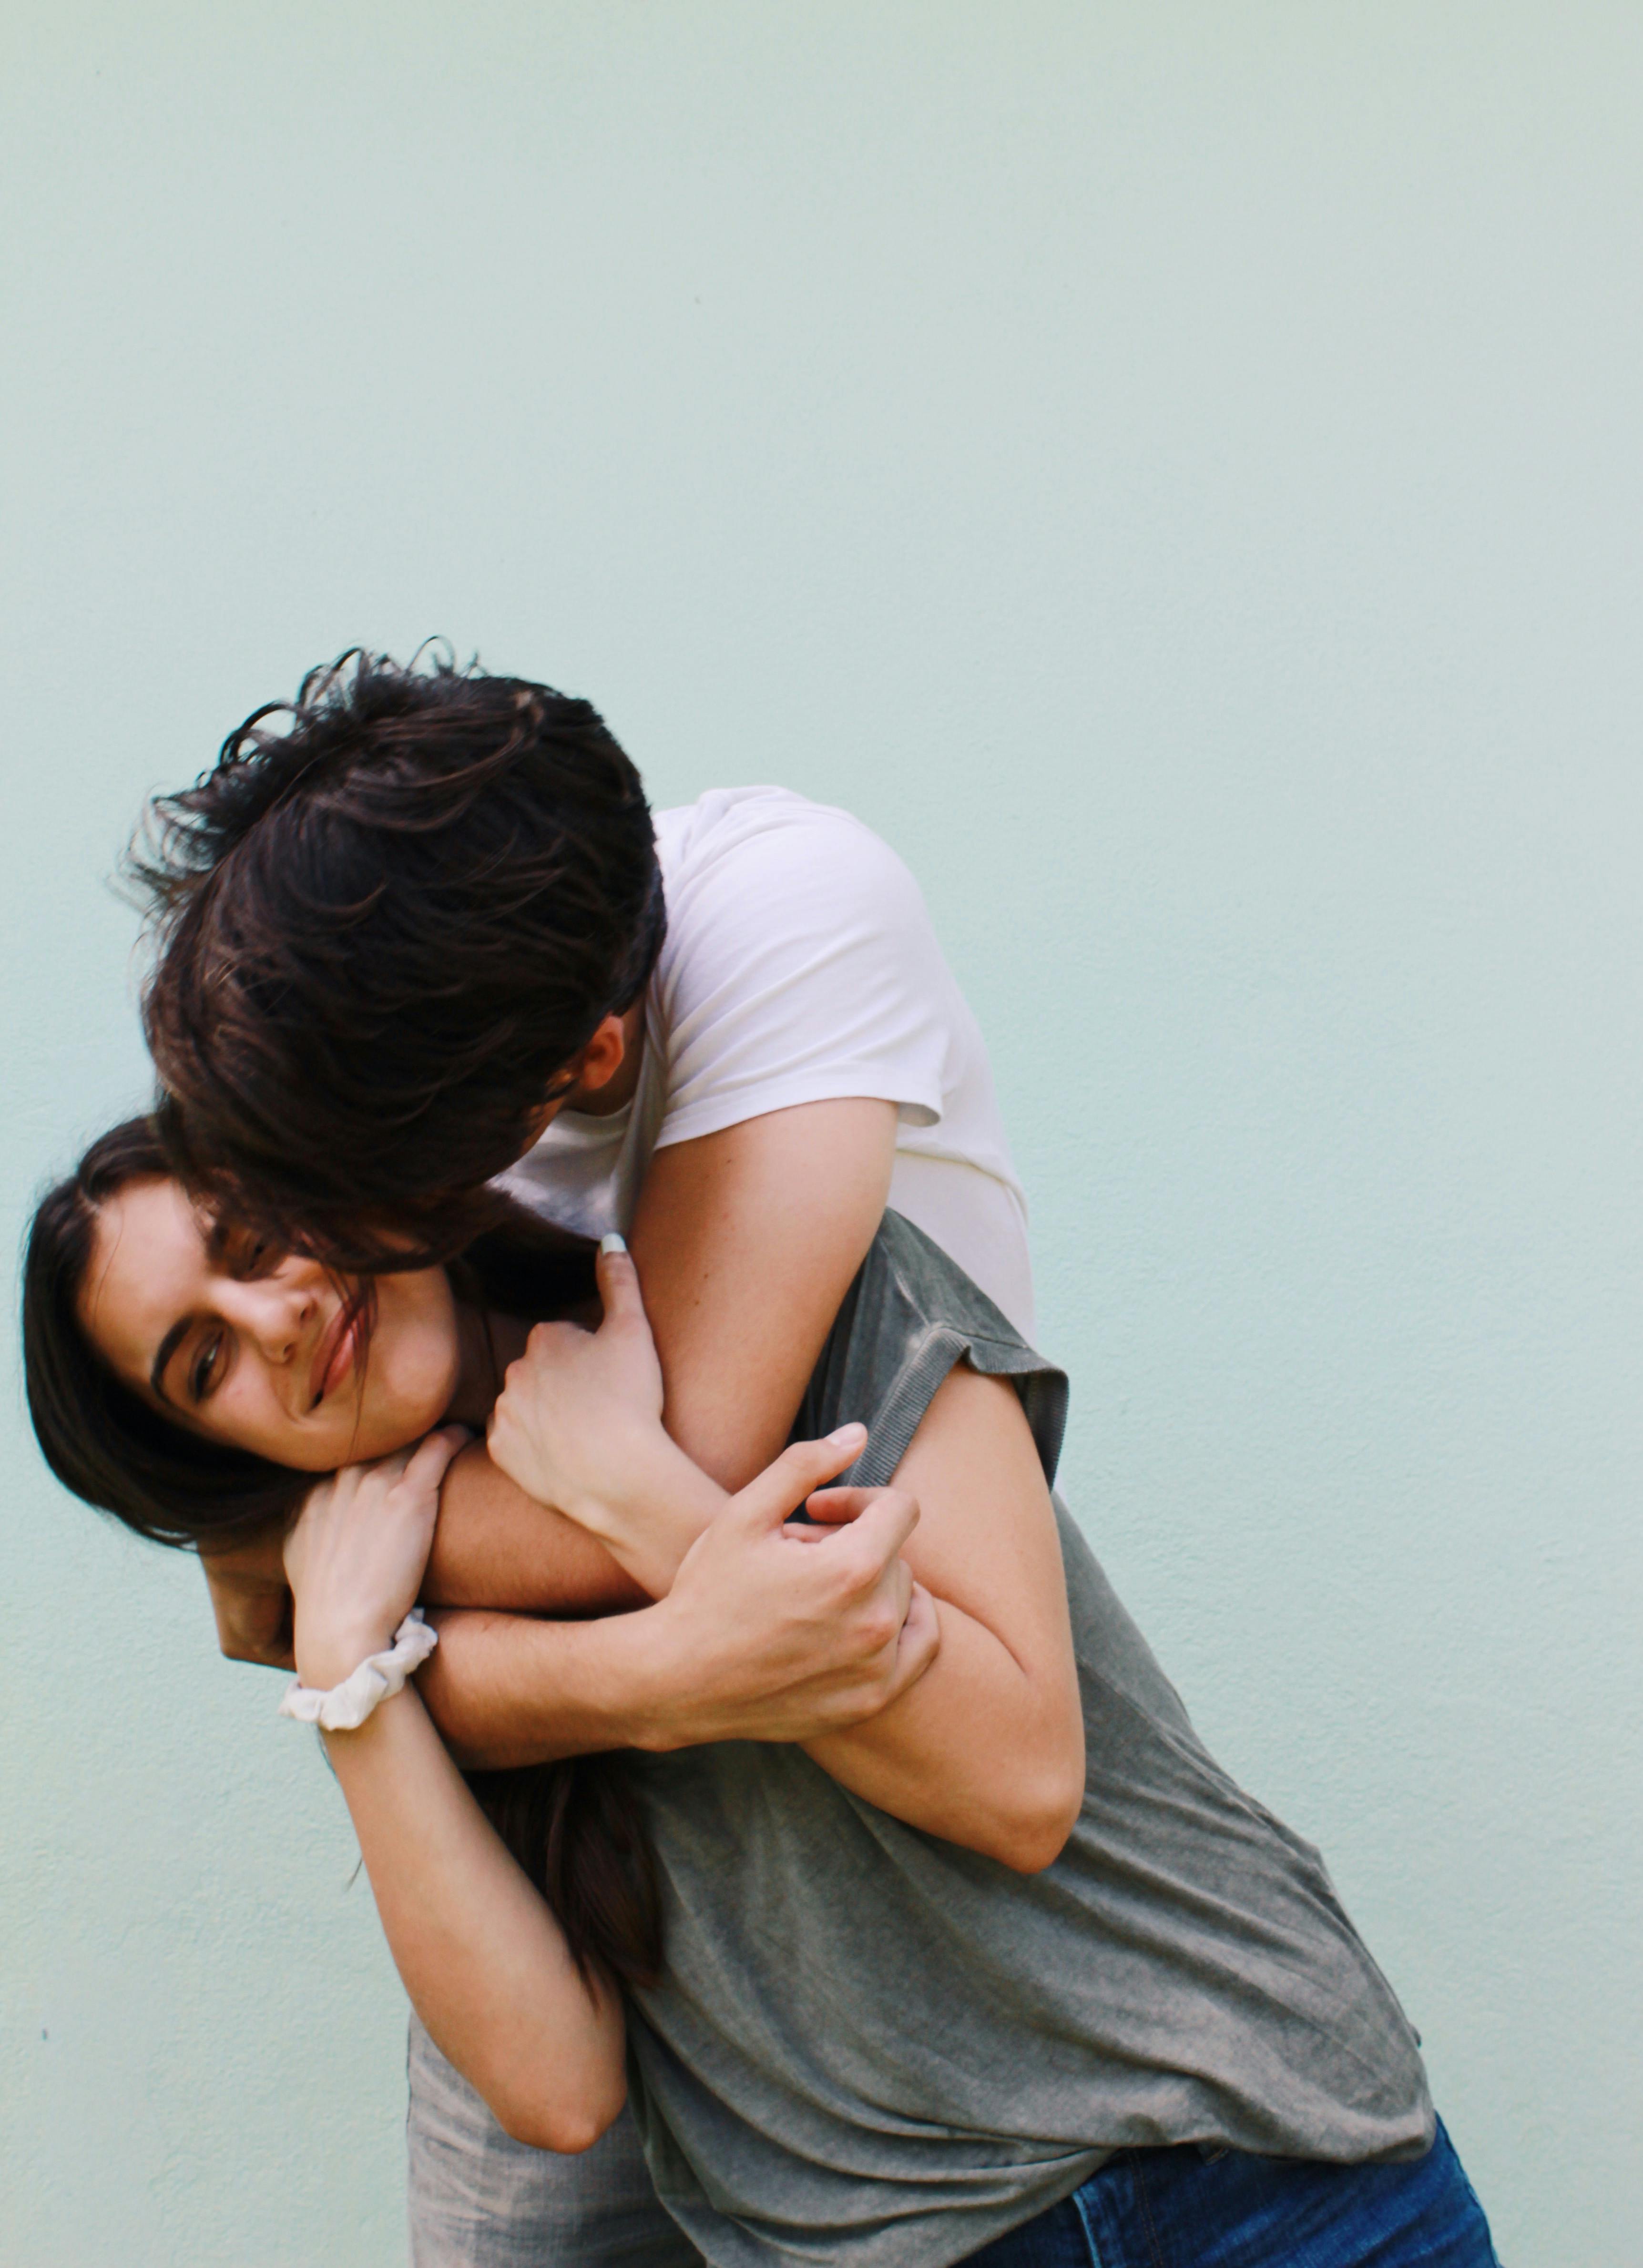 Un homme heureux embrassant et serrant dans ses bras une femme à l'air mécontent | Source : Pexels